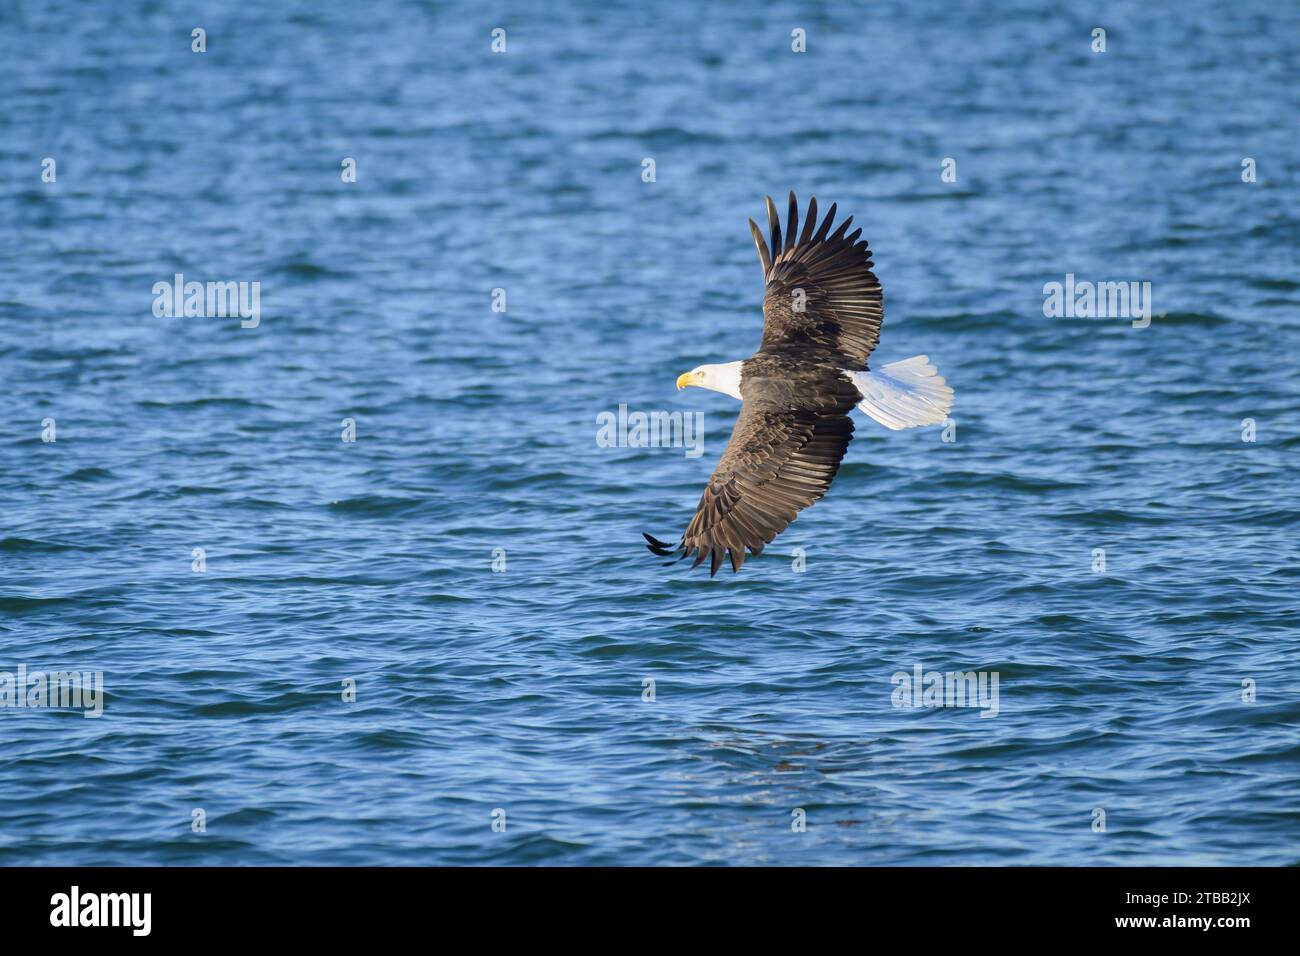 Aigle à tête blanche adulte tournant avec des ailes étendues au-dessus de l'eau bleue Banque D'Images